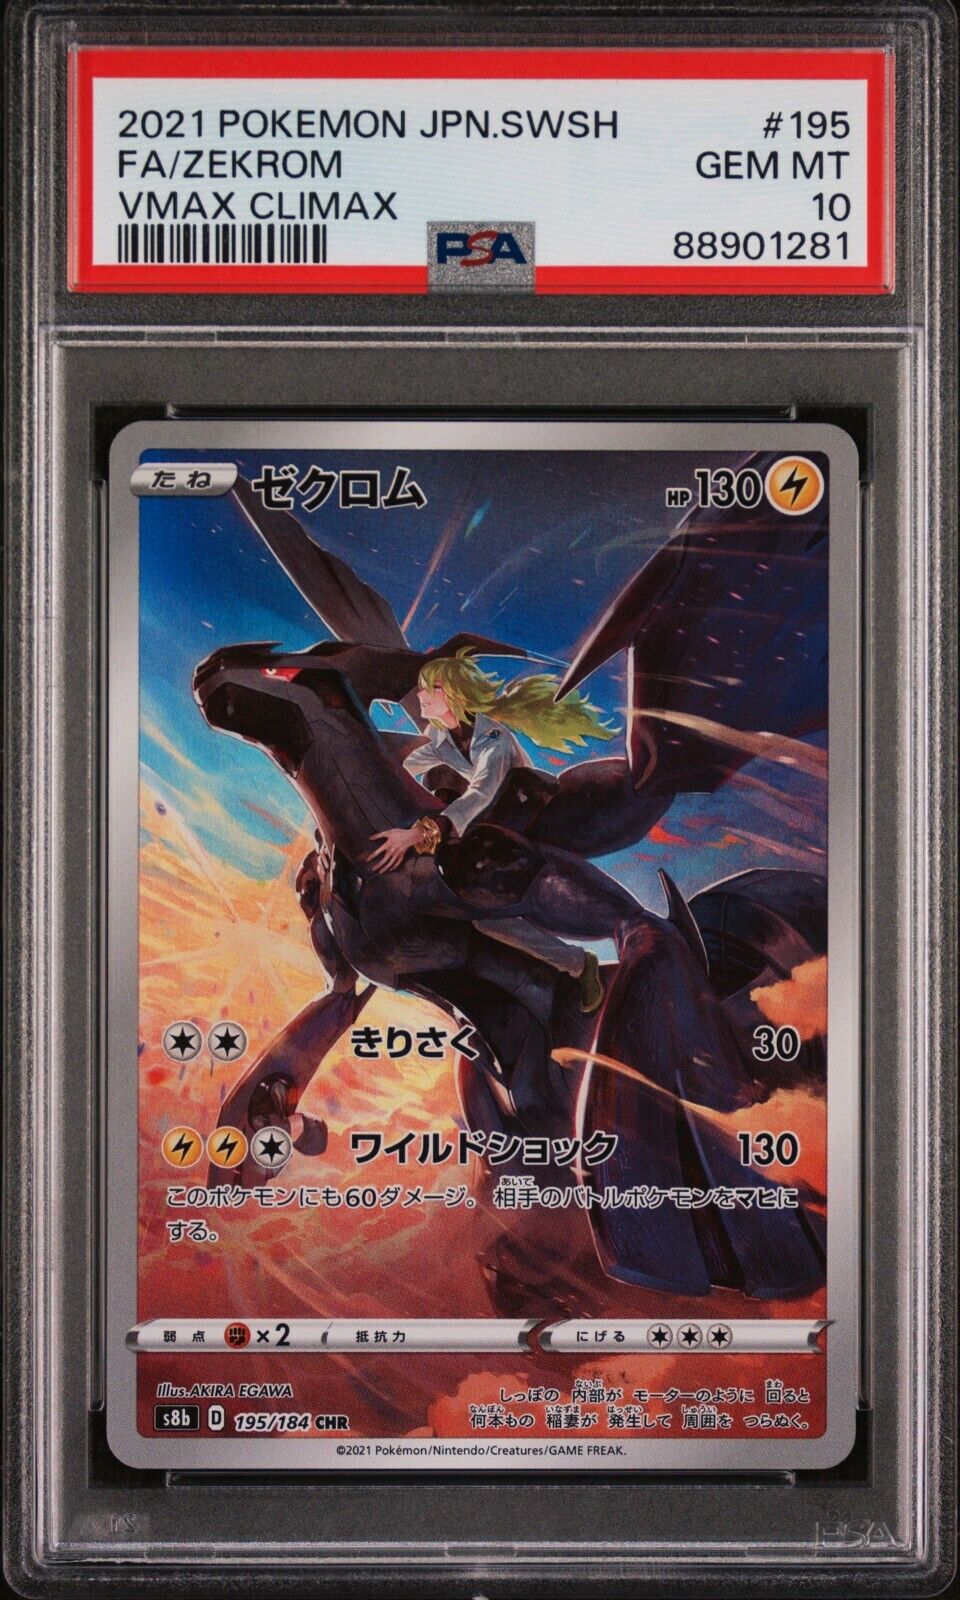 PSA 10 Zekrom Full Art 2021 Pokemon Card 195/184 VMAX Climax Japanese